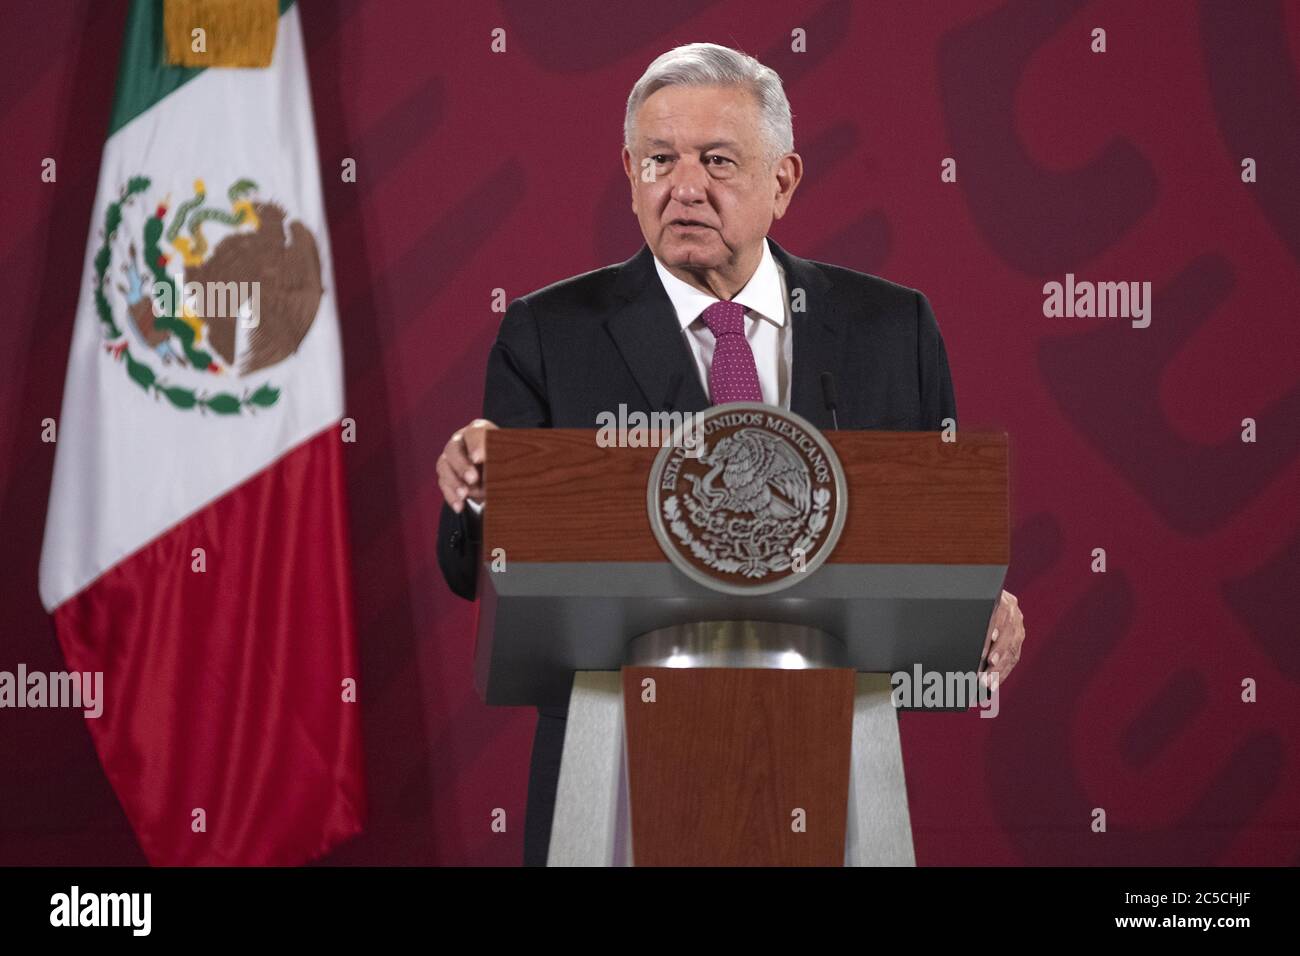 Mexico, Mexique. 1er juillet 2020. Le président mexicain Andres Manuel Lopez Obrador prend la parole lors d'une conférence de presse à Mexico, Mexique, le 1er juillet 2020. L'Accord États-Unis-Mexique-Canada (USMCA) est entré officiellement en vigueur mercredi, remplaçant l'Accord de libre-échange nord-américain (ALENA), vieux de 26 ans. Crédit: STR/Xinhua/Alay Live News Banque D'Images